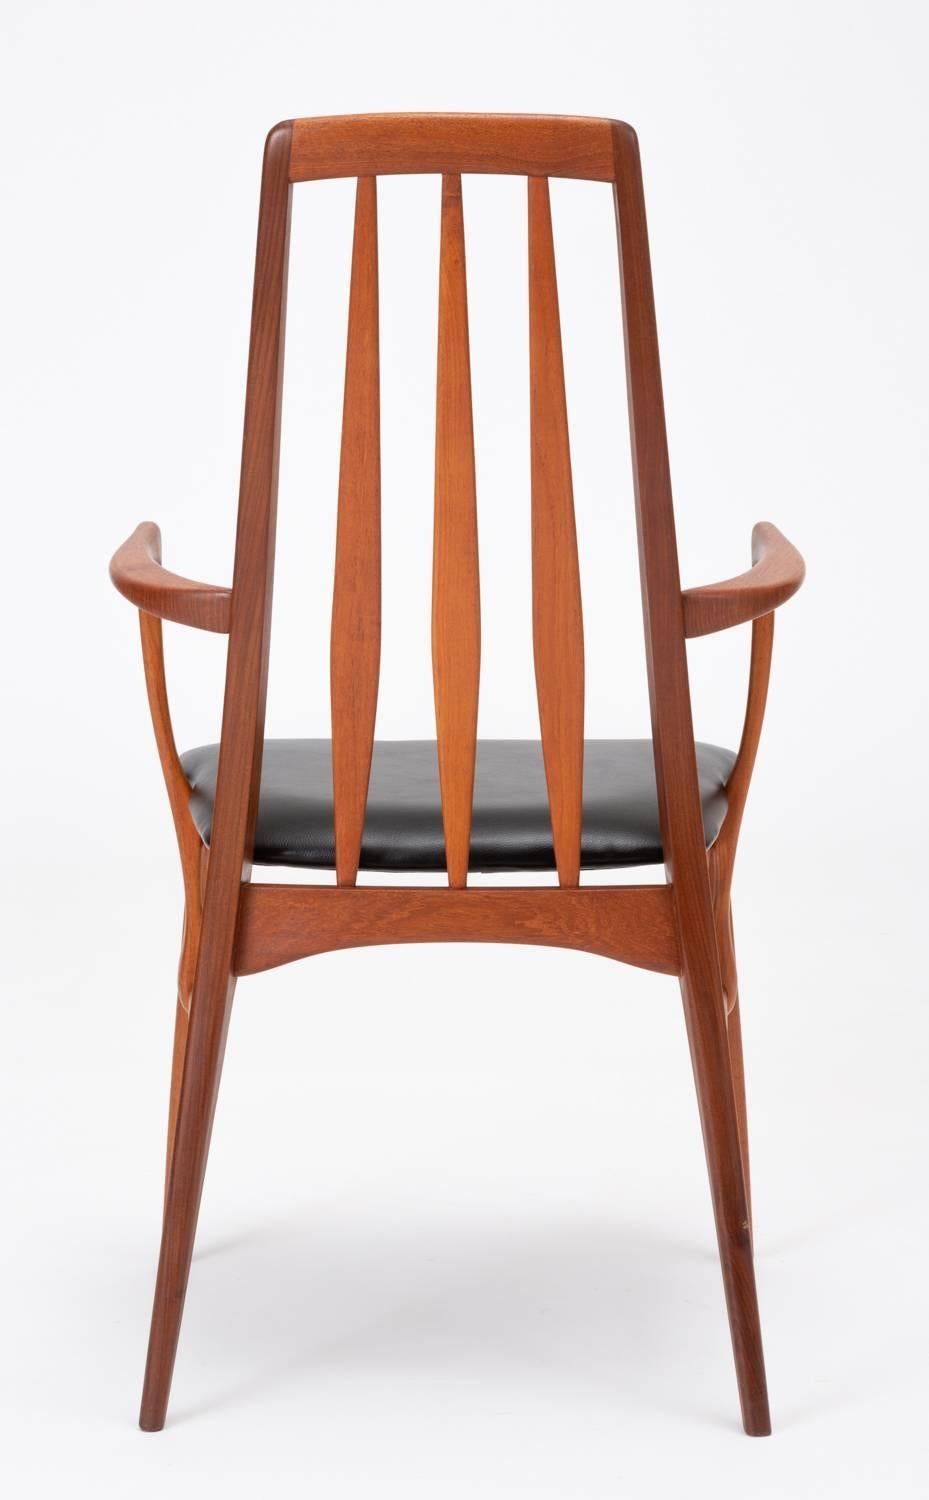 Pair of Eva Captain Chairs by Niels Koefoed for Koefoeds Mobelfabrik 1